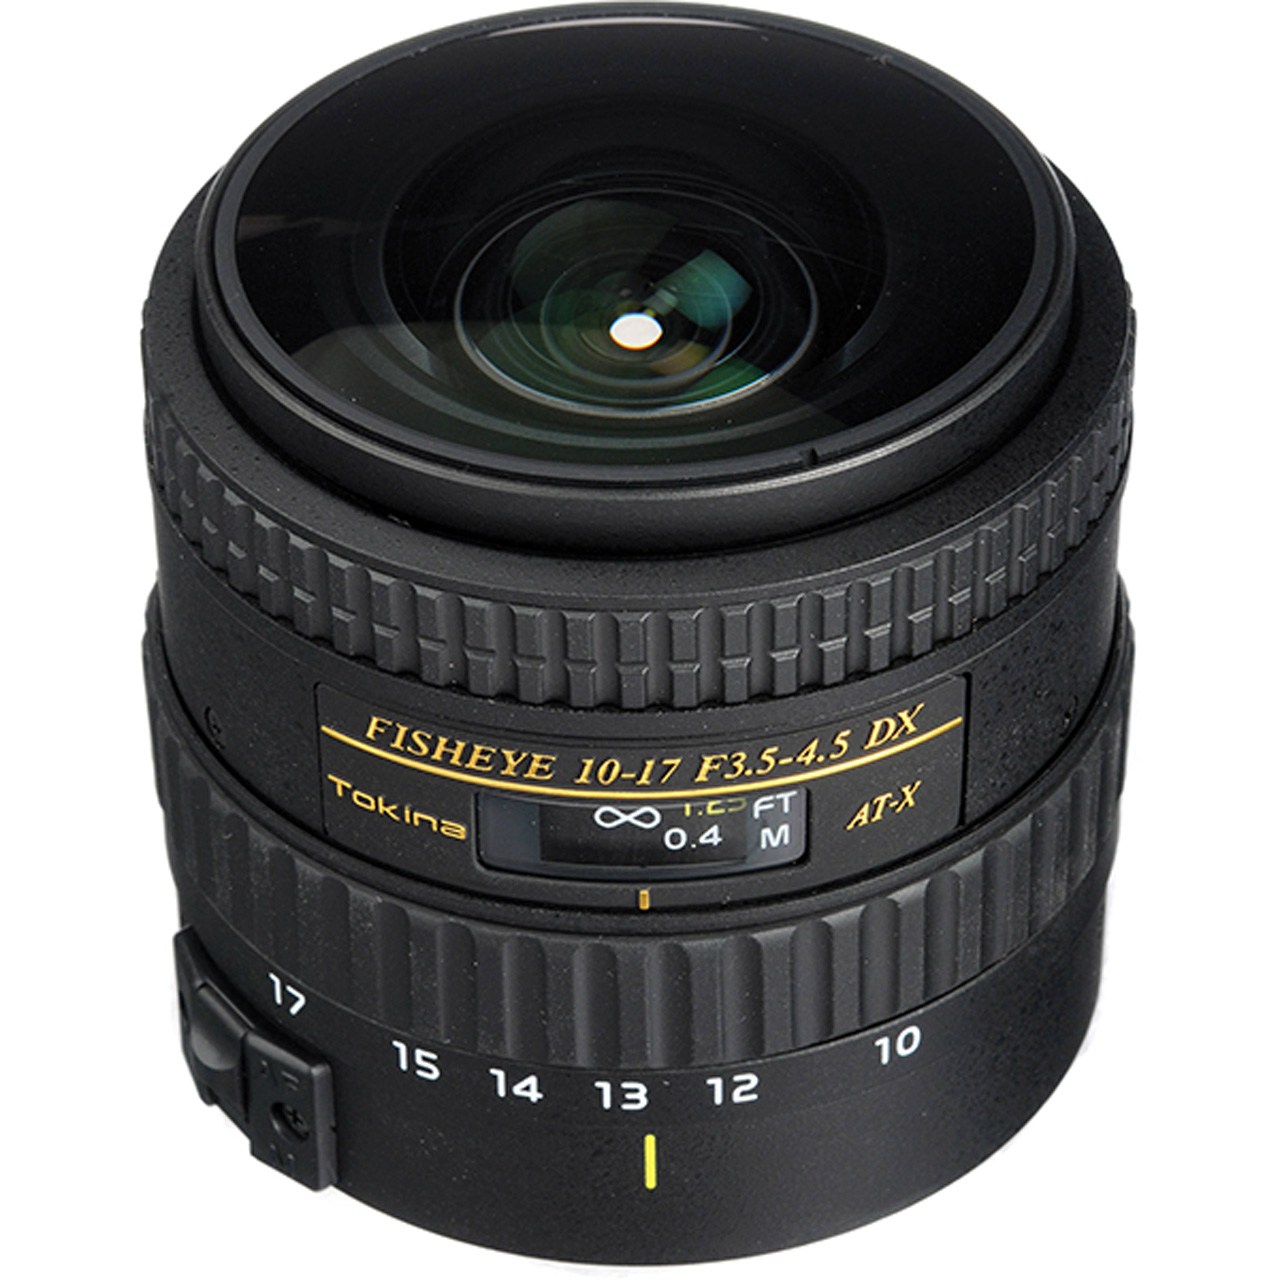 لنز دوربین توکینا 17-10 F/3.5-4.5 DX Auotofocus Fisheye For Canon